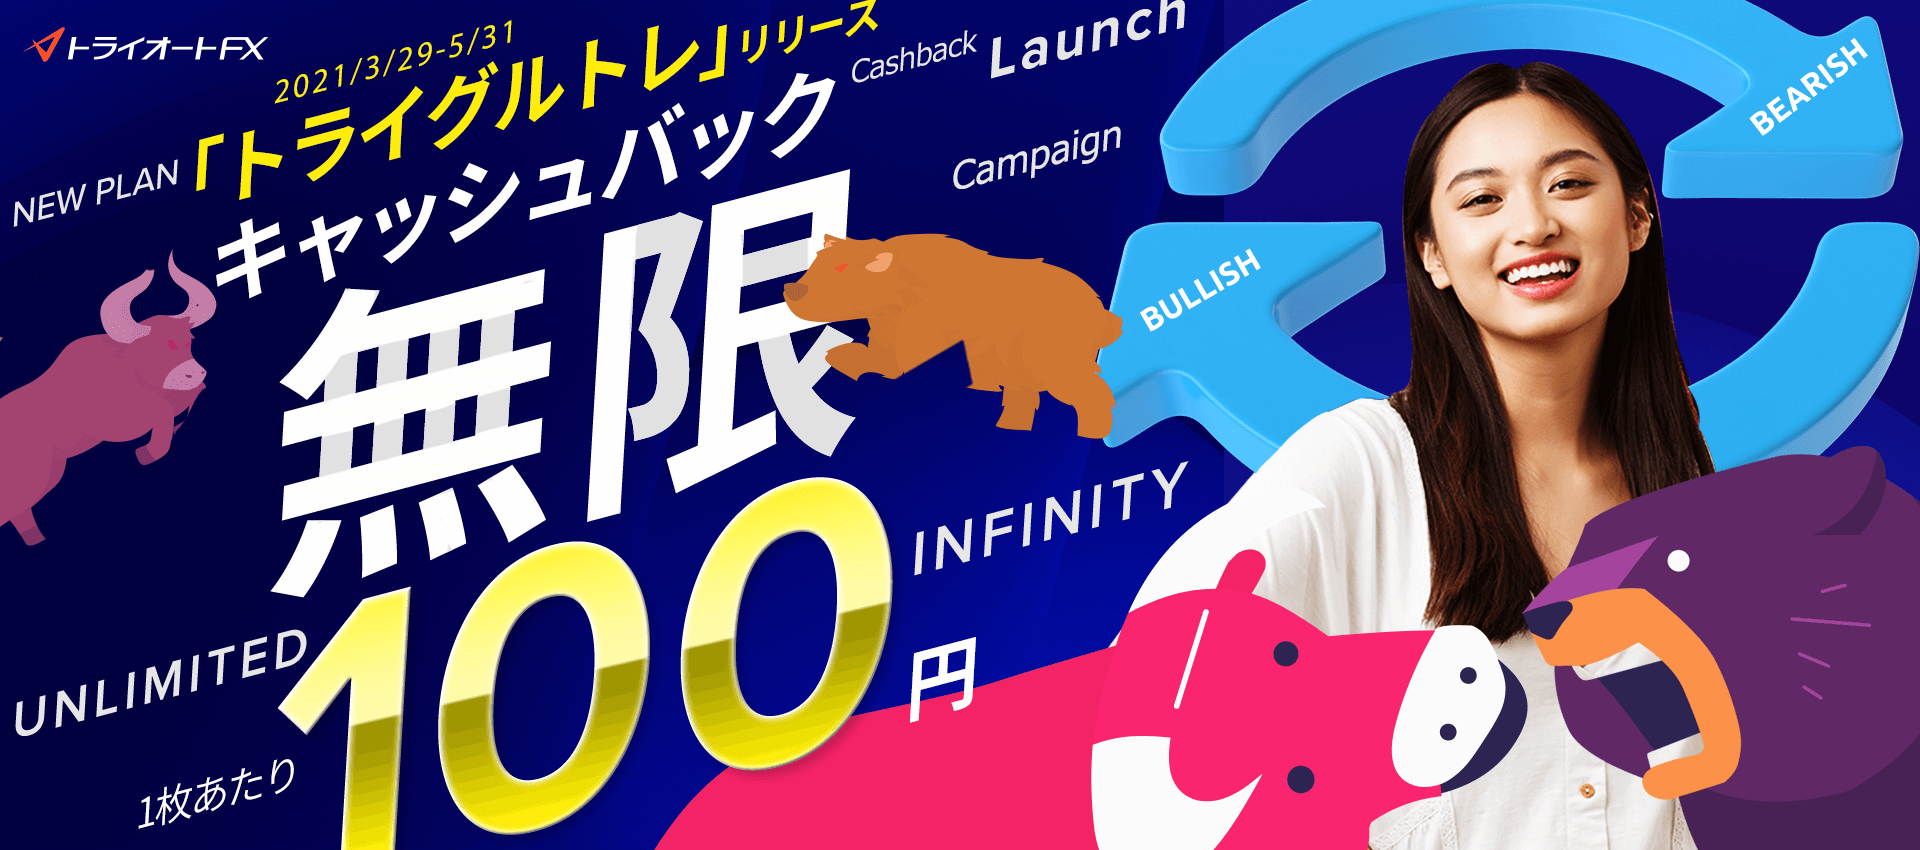 トライオートFX 無限キャッシュバックキャンペーン Newリリース「トライグルトレ」 1枚あたり100円キャッシュバック